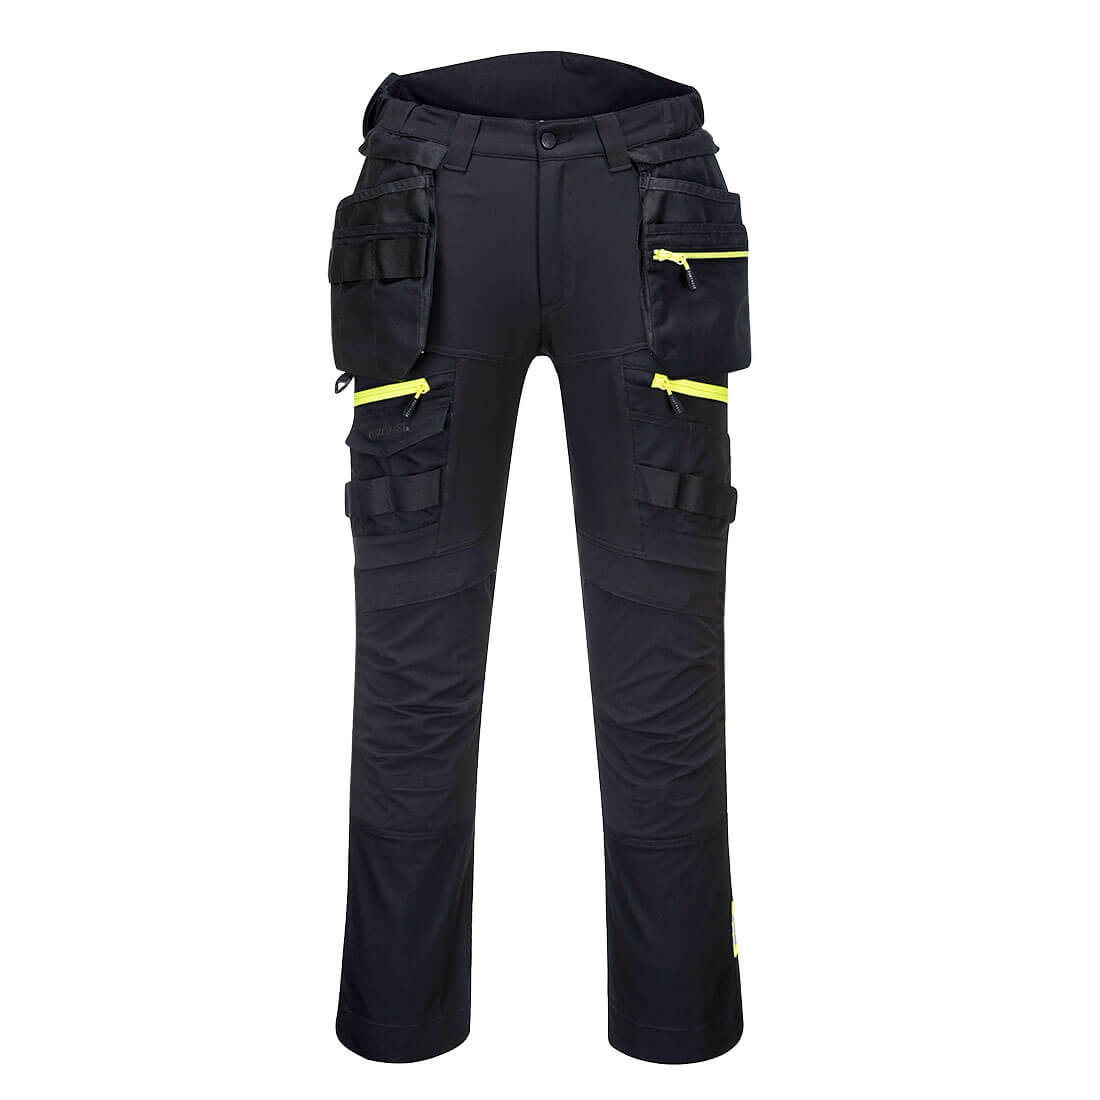 Pantalon DX4 pour femmes avec poches holster amovibles - Les vêtements de protection